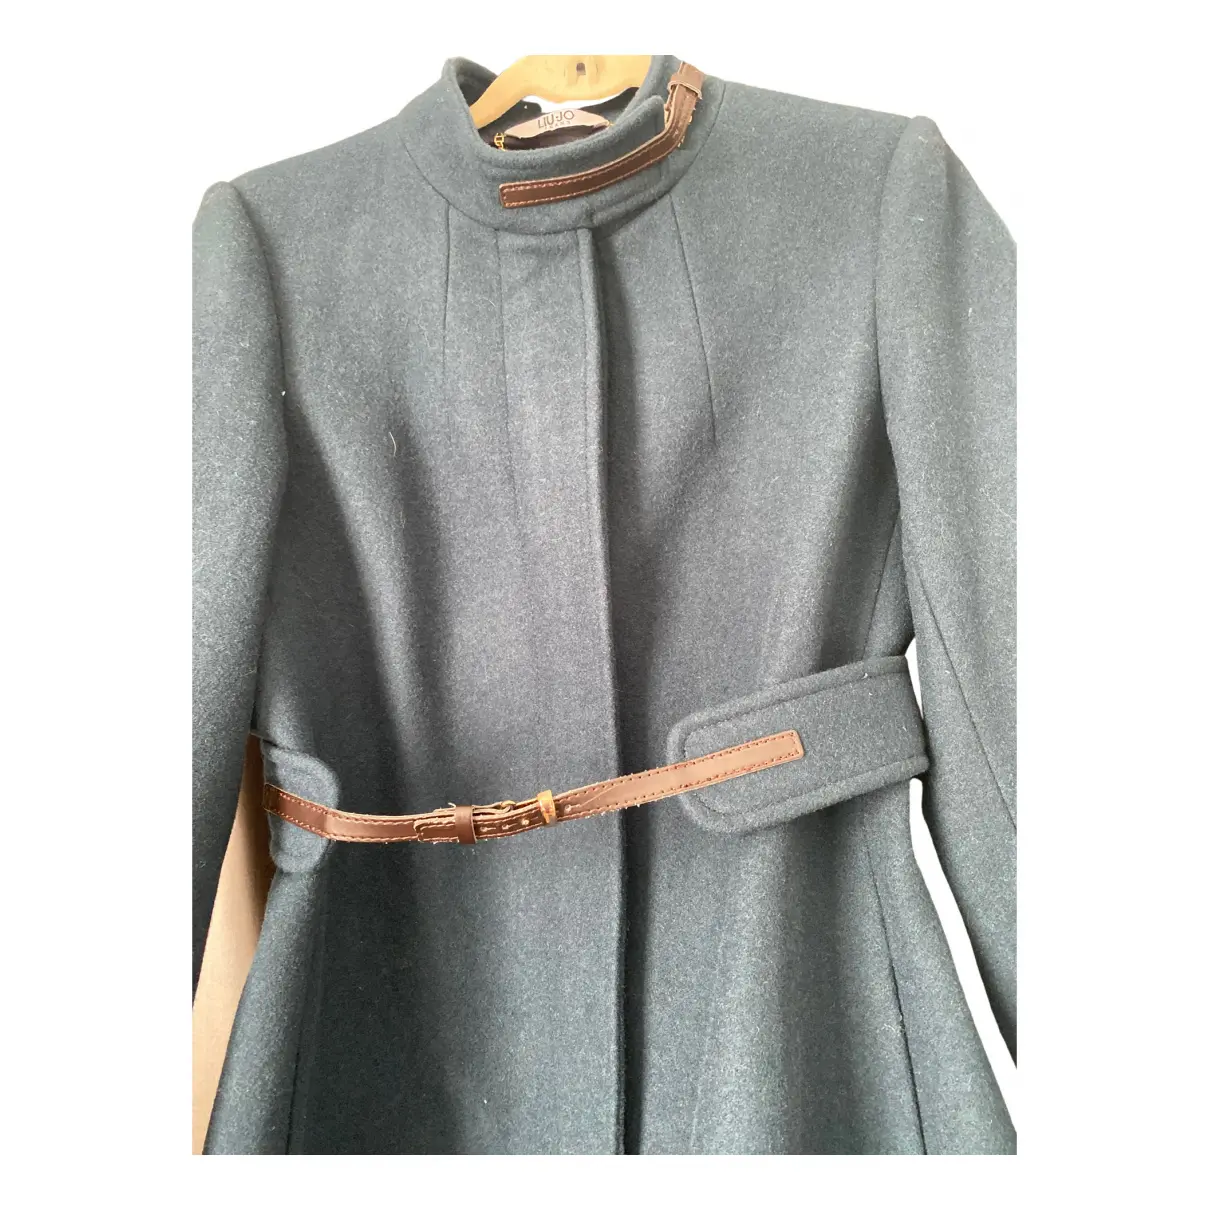 Buy Liu.Jo Wool coat online